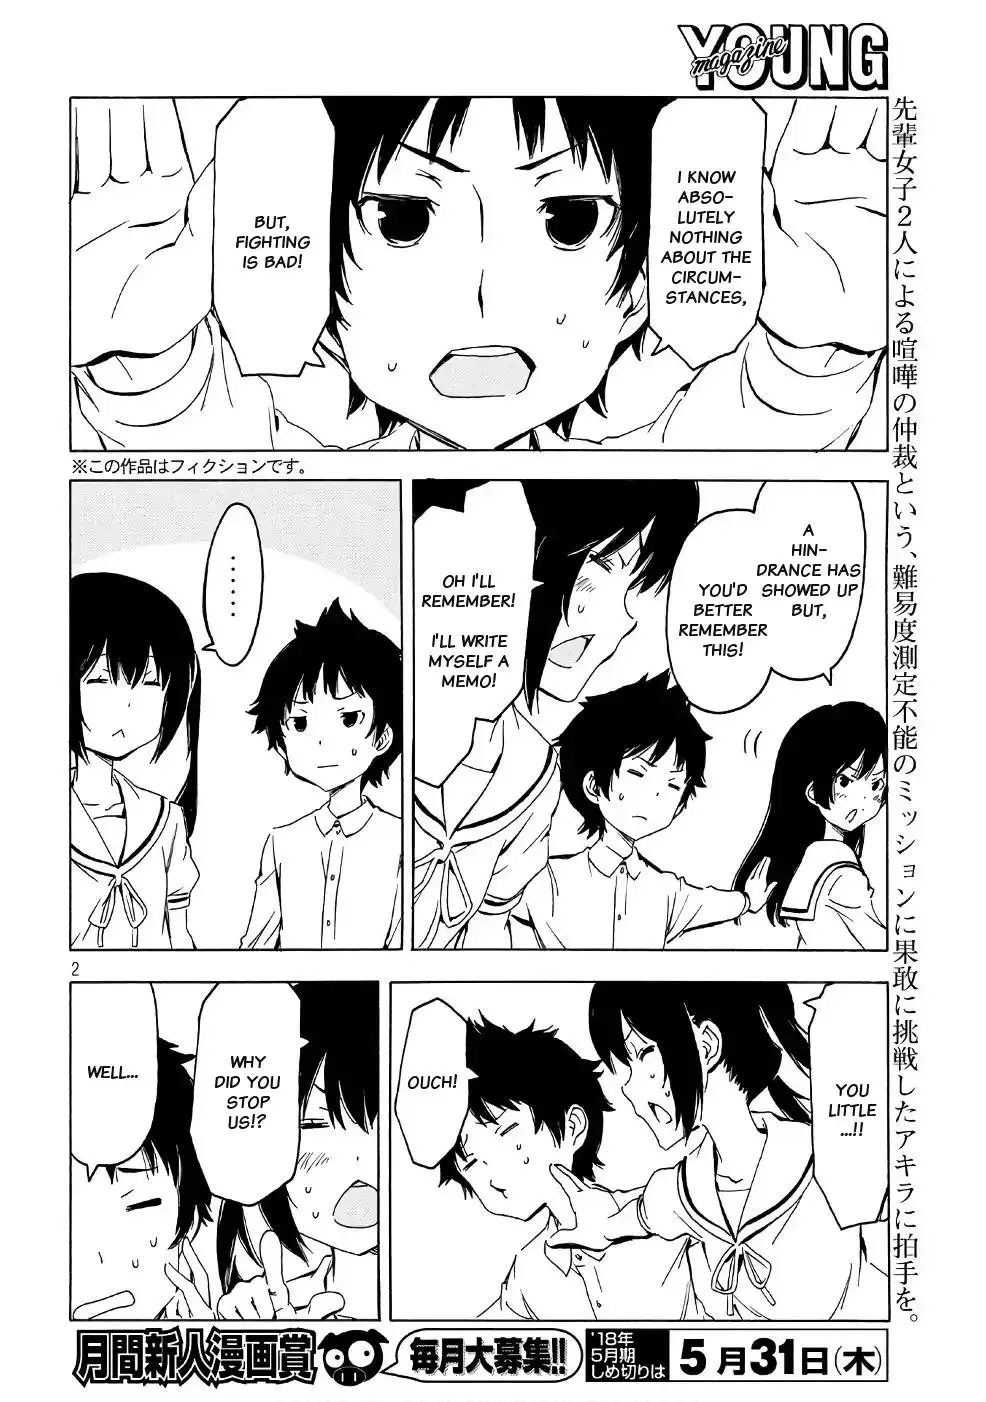 Minami-ke - 341 page 1